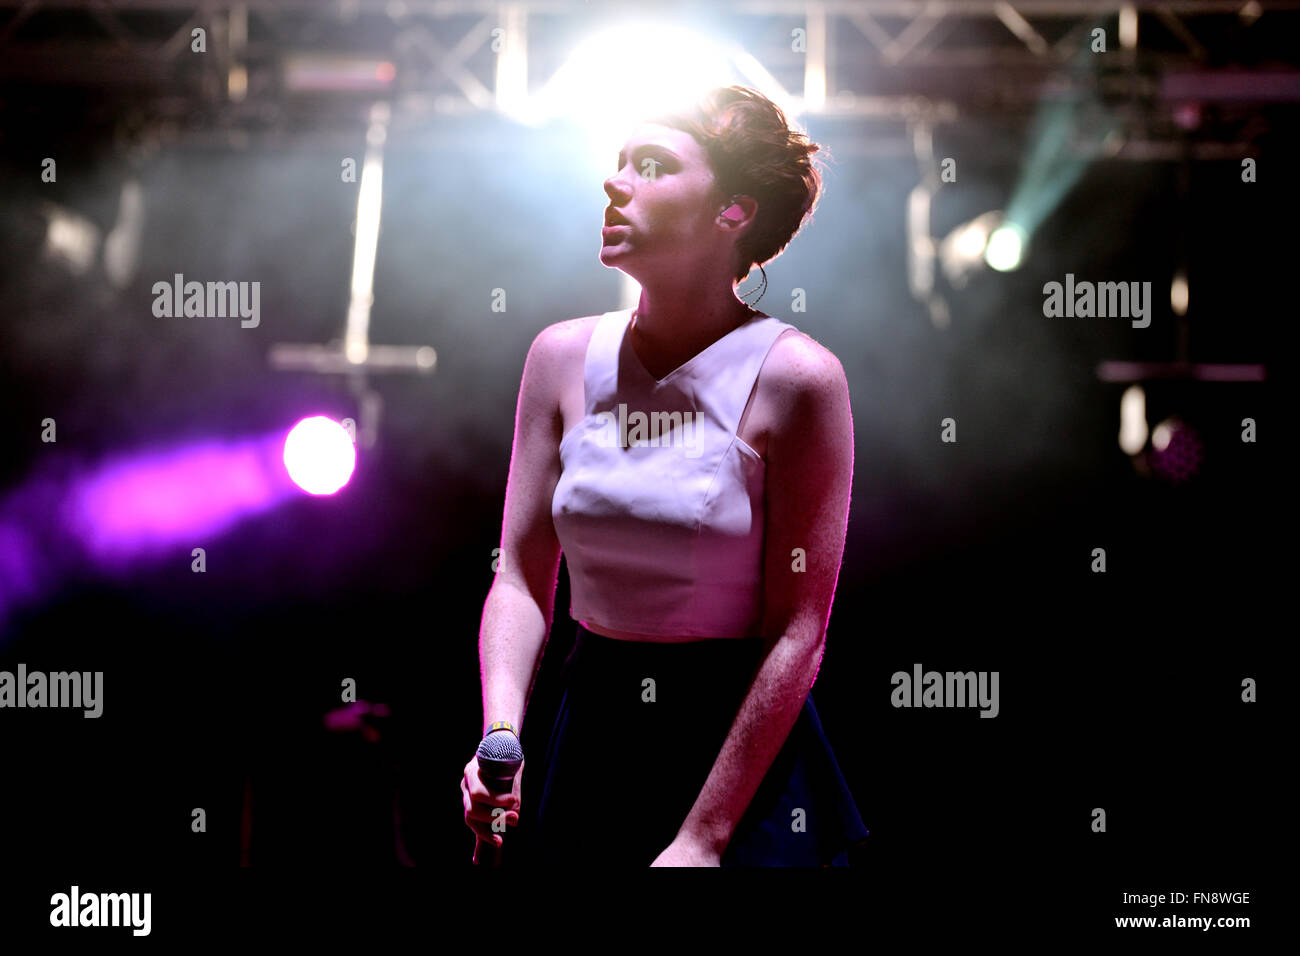 BENICASSIM, Spanien - 20 Juli: Chloe heulen (britische Sängerin nominiert für die BBC Sound of 2014) Auftritt beim FIB Festival. Stockfoto